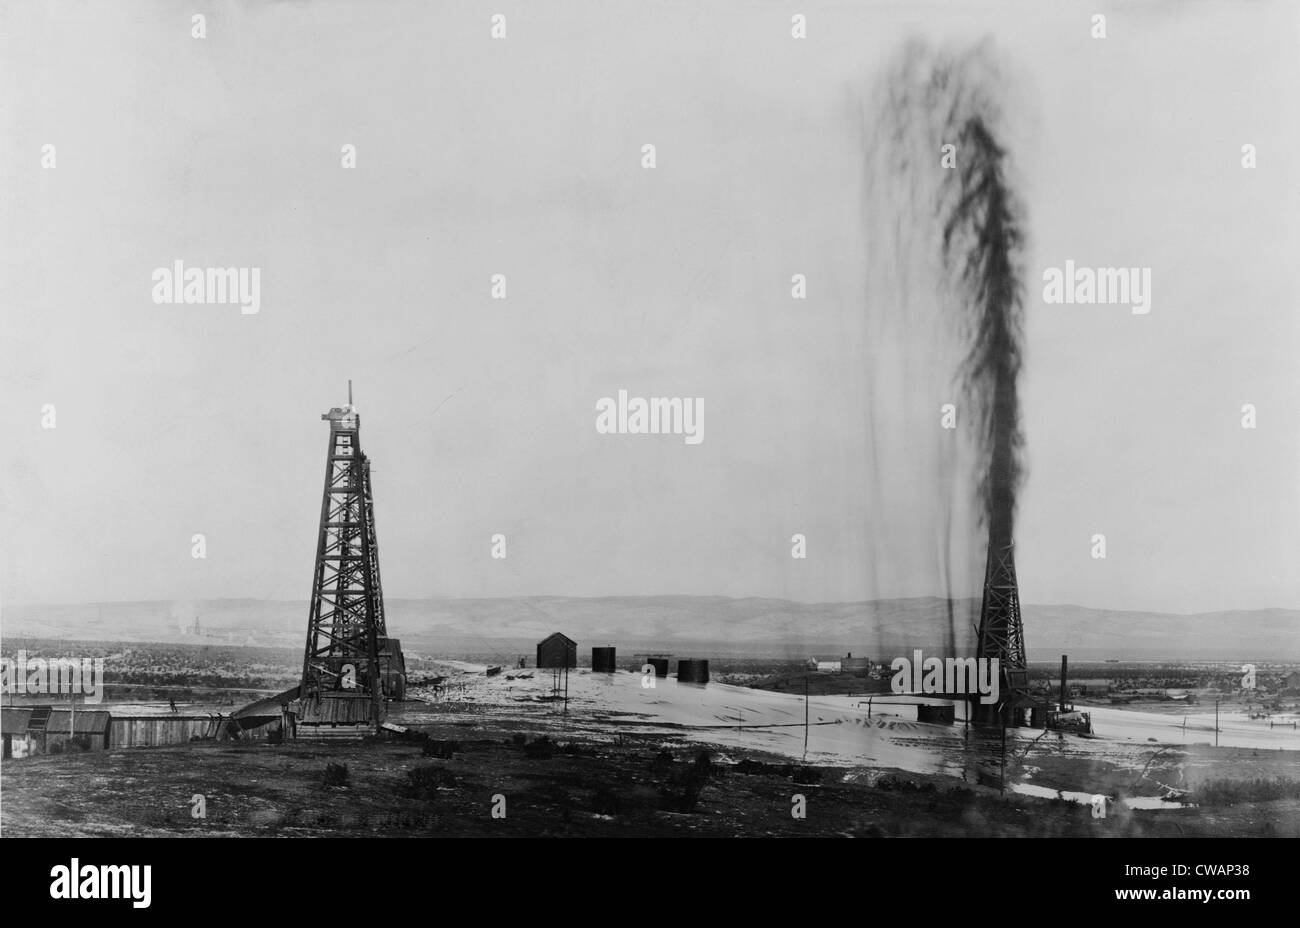 Gusher in a California oil field, ca. 1910. Stock Photo